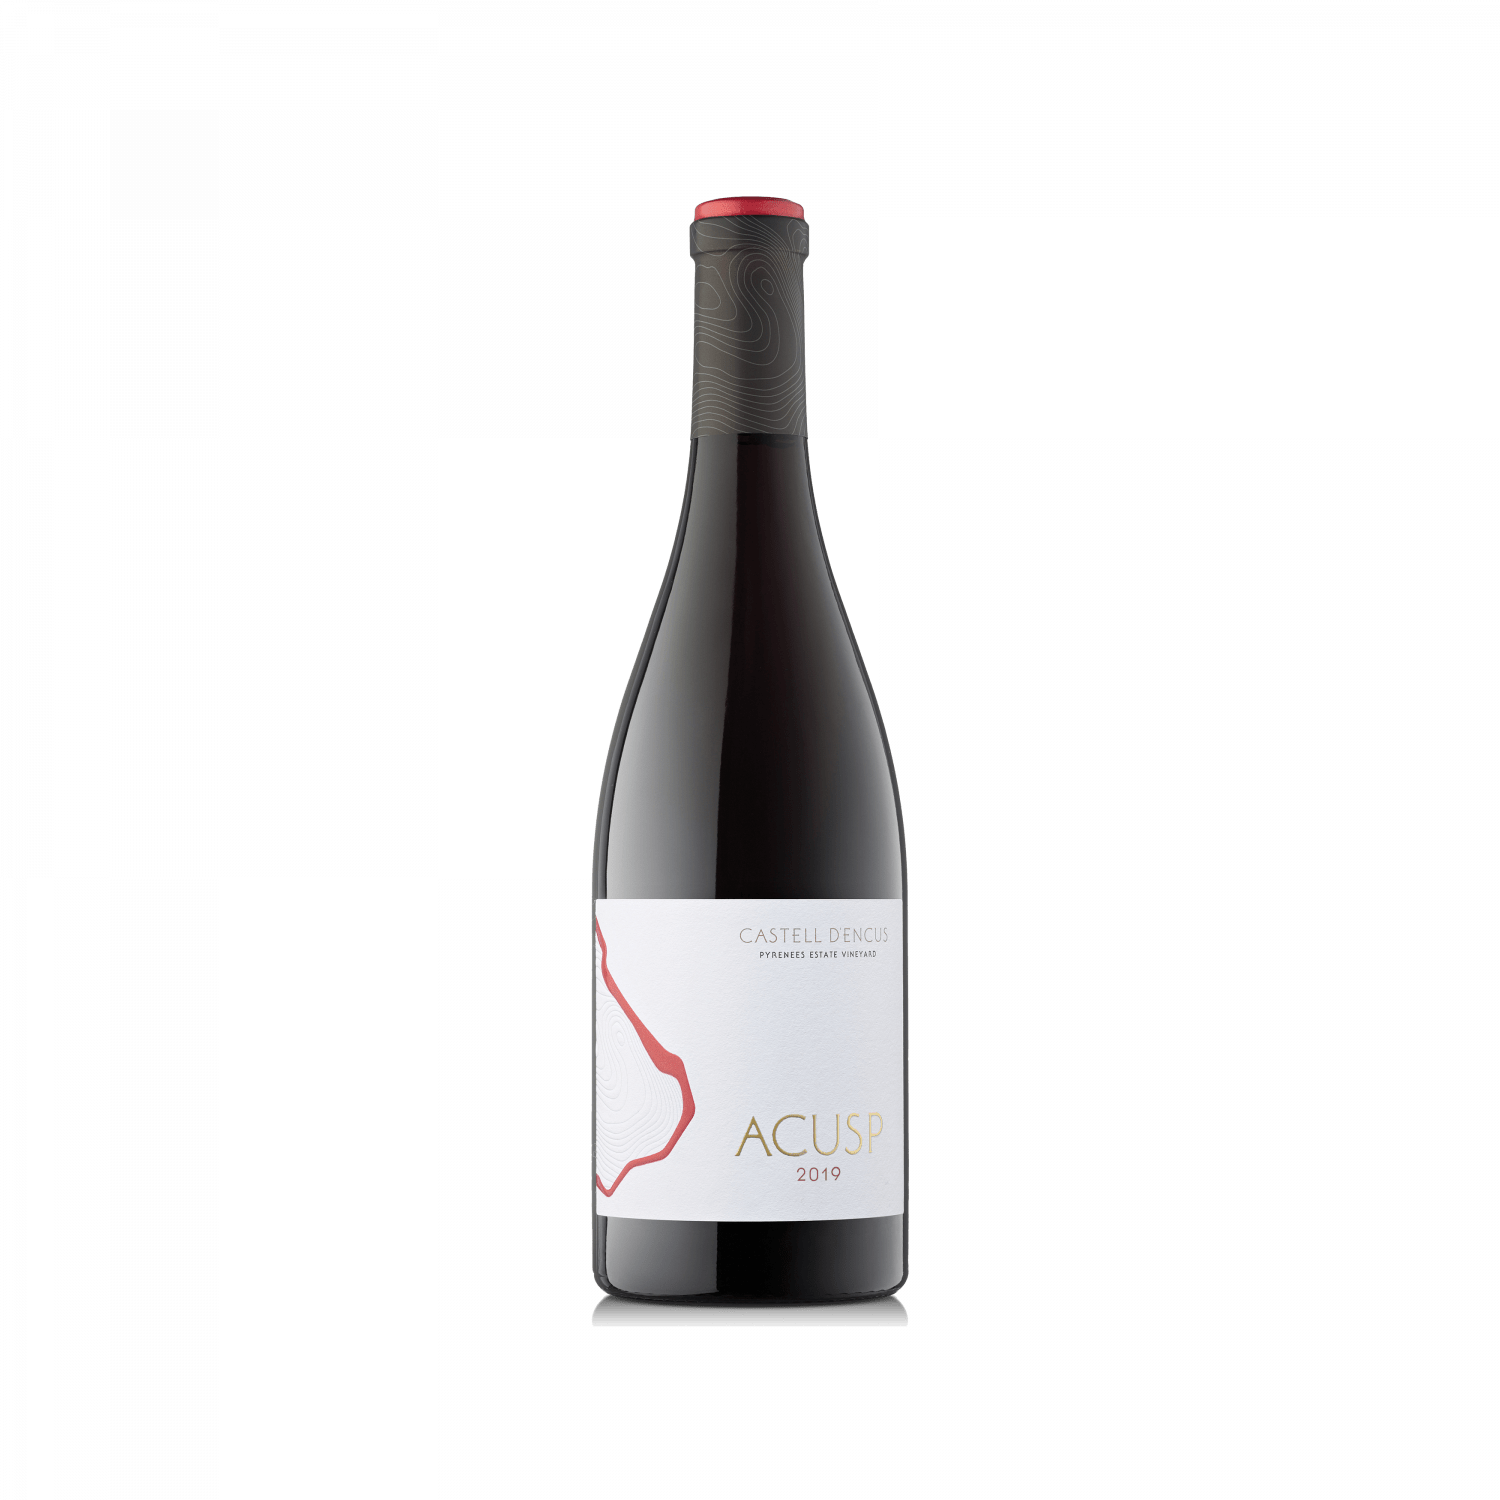 Botella de estudio del vino ACUSP 2019